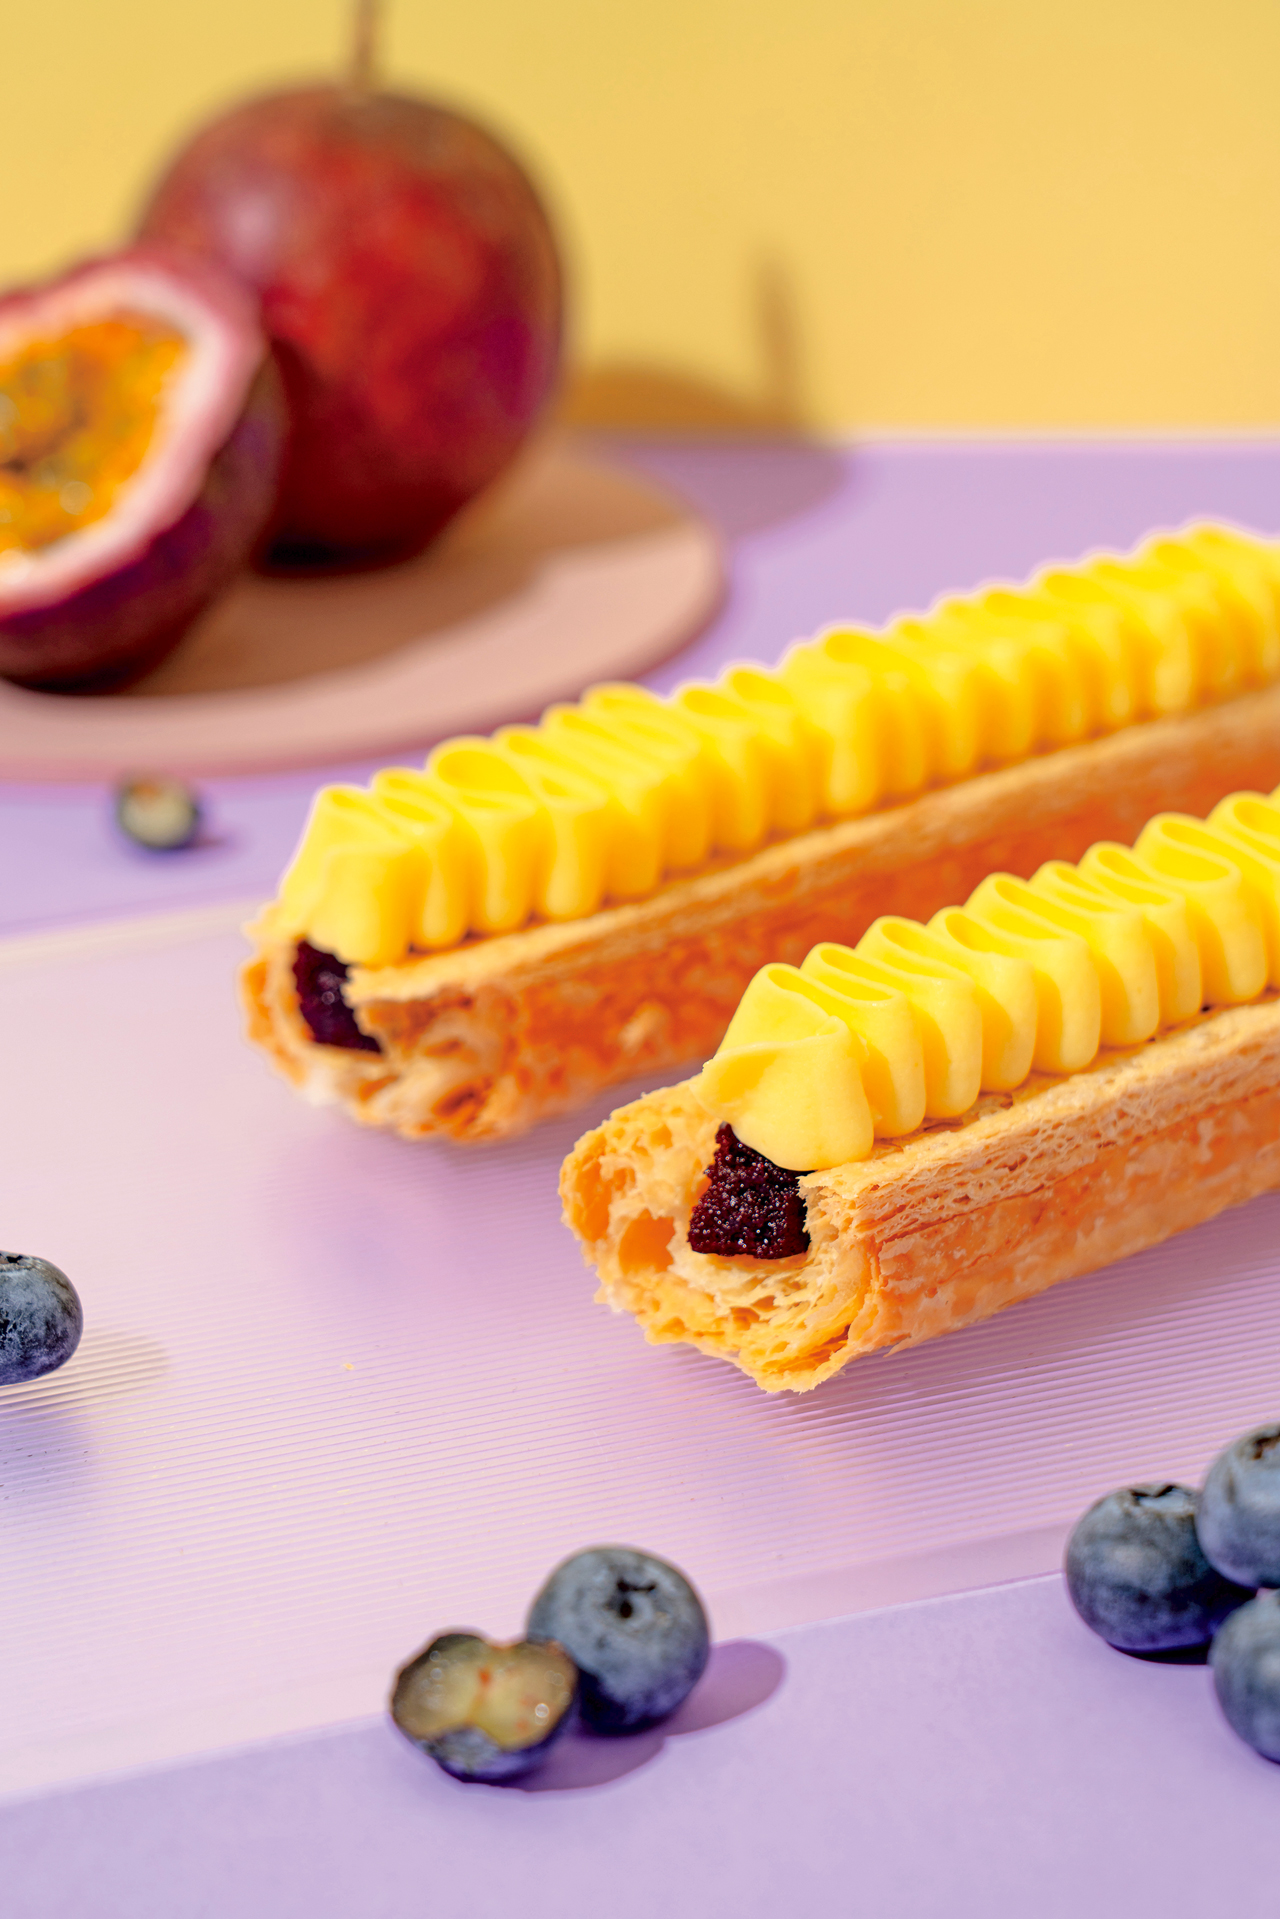 蜜樂酥是一款「以水果做基底的生活甜點」。圖為百香莓果蜜樂酥。微熱山丘提供